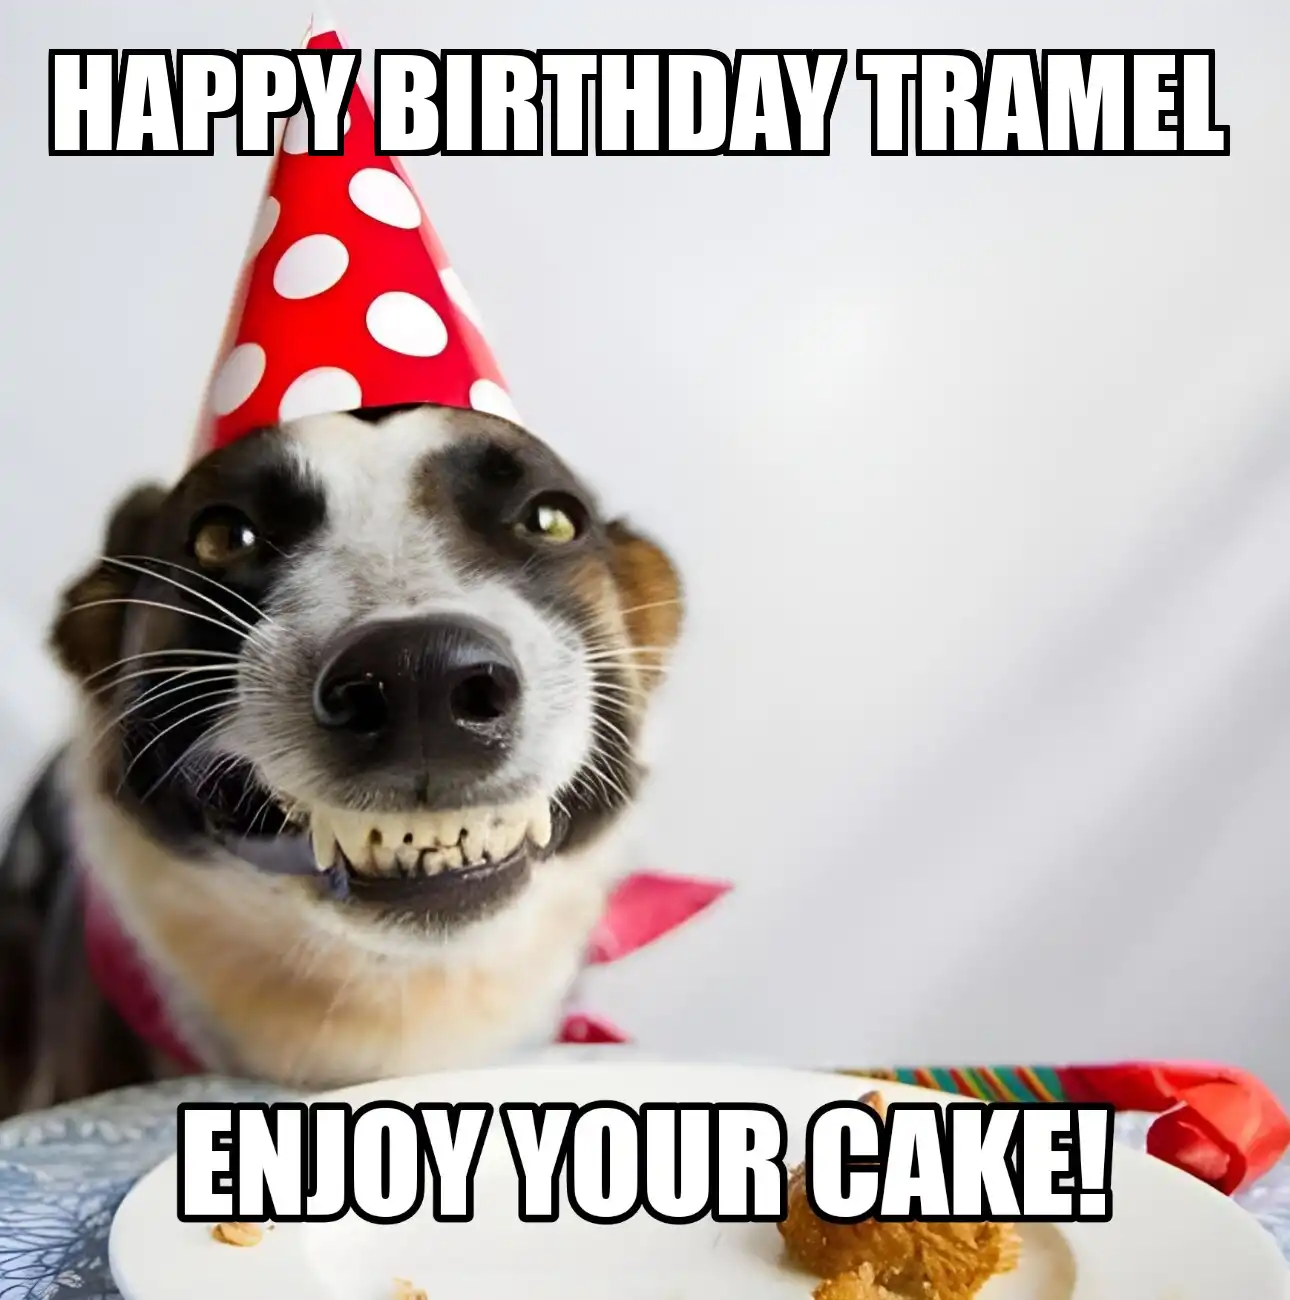 Happy Birthday Tramel Enjoy Your Cake Dog Meme